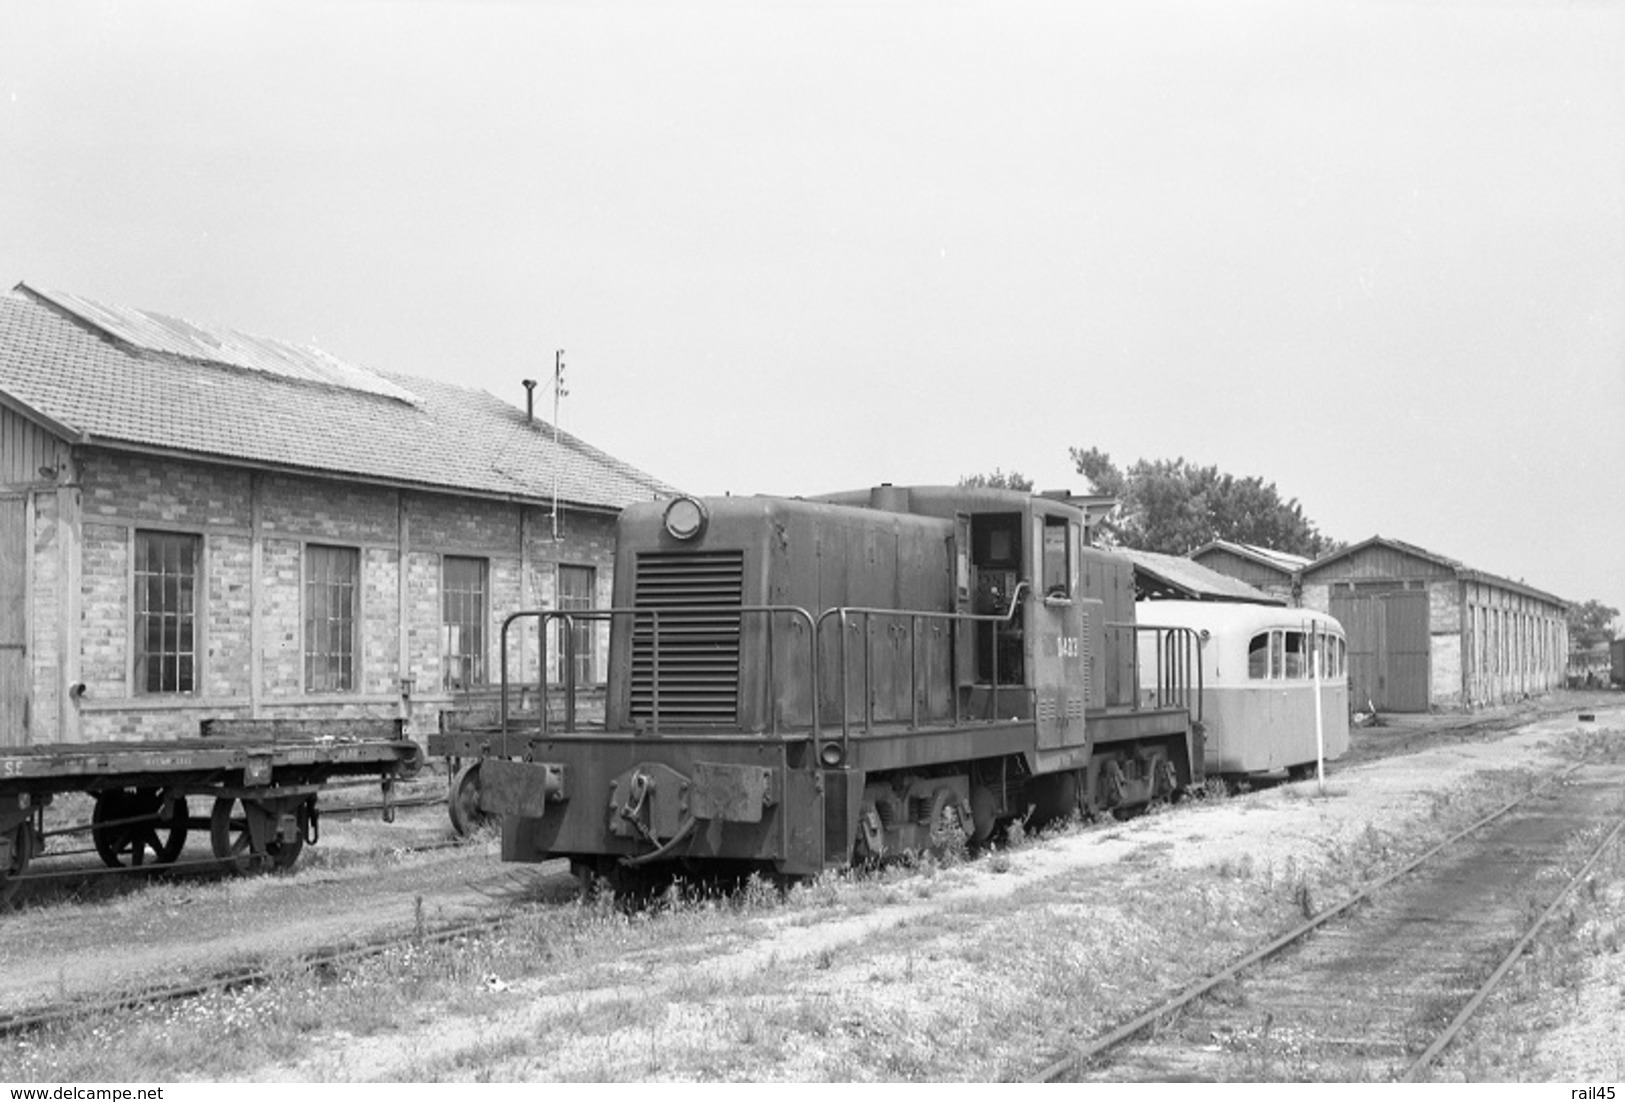 Lacanau-Médoc. Economiques De Gironde. Locomotive General Electric D-4031. Cliché Jacques Bazin. 05-07-1953 - Trains